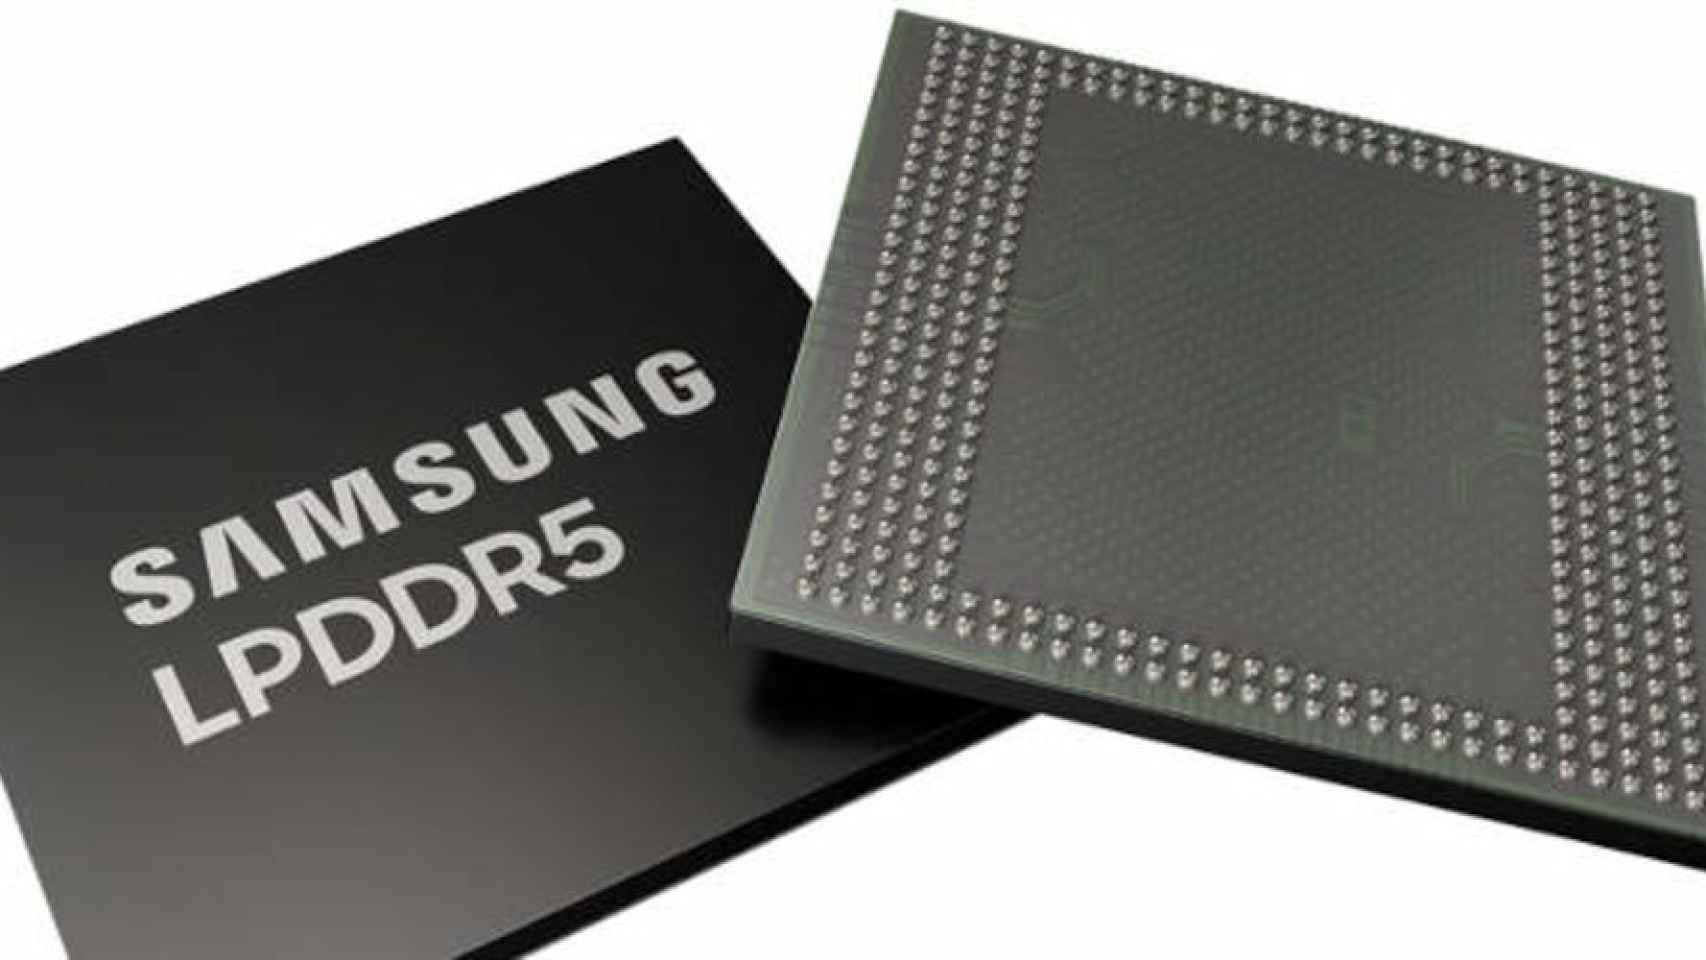 12 GB de RAM, Samsung echará el resto con el S10